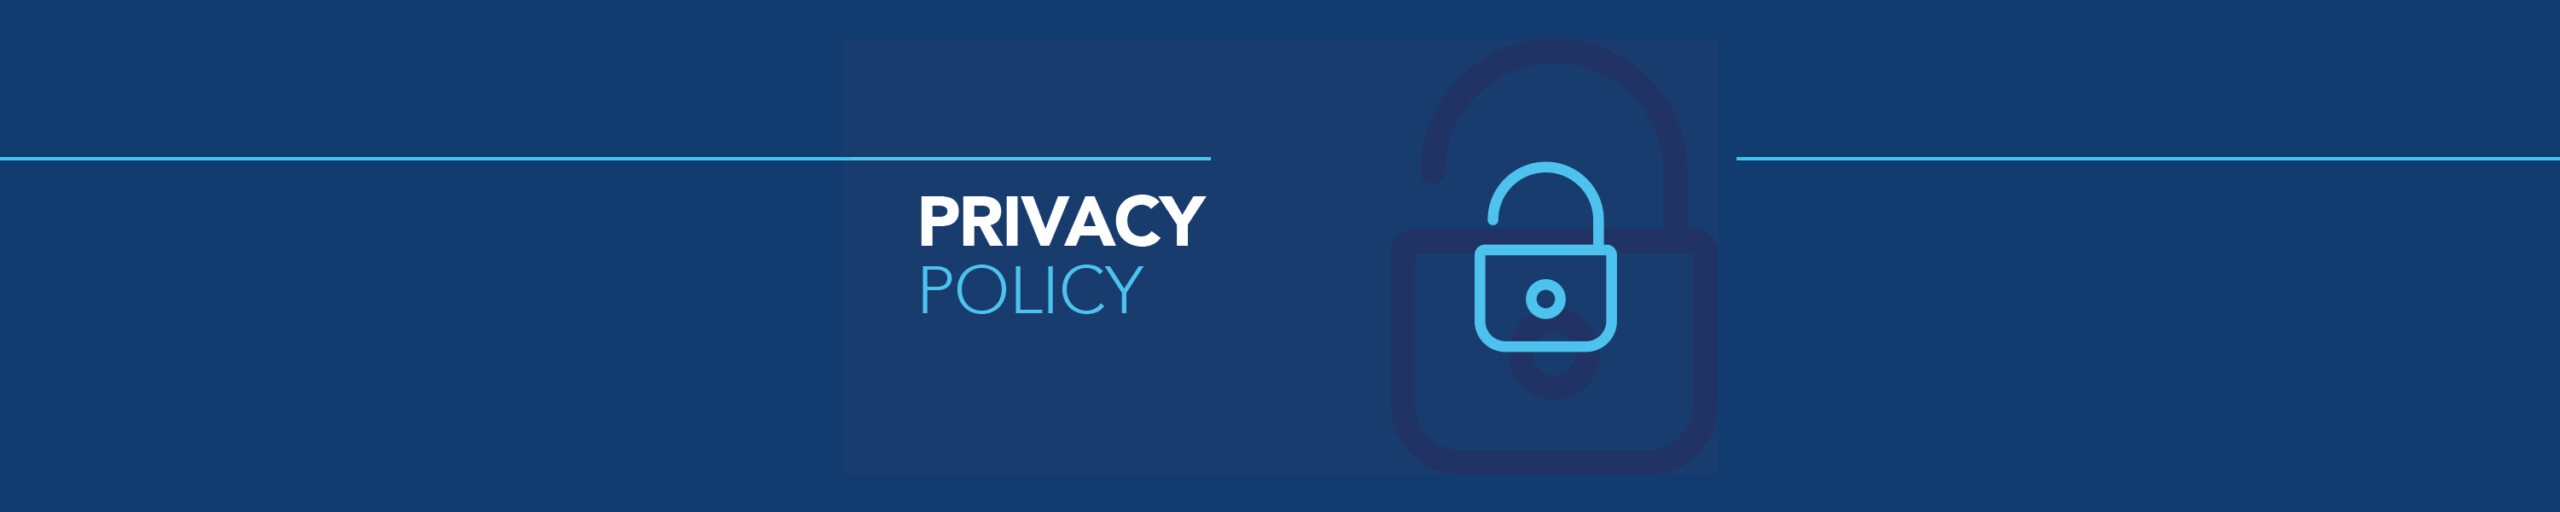 sym-privacy-policy